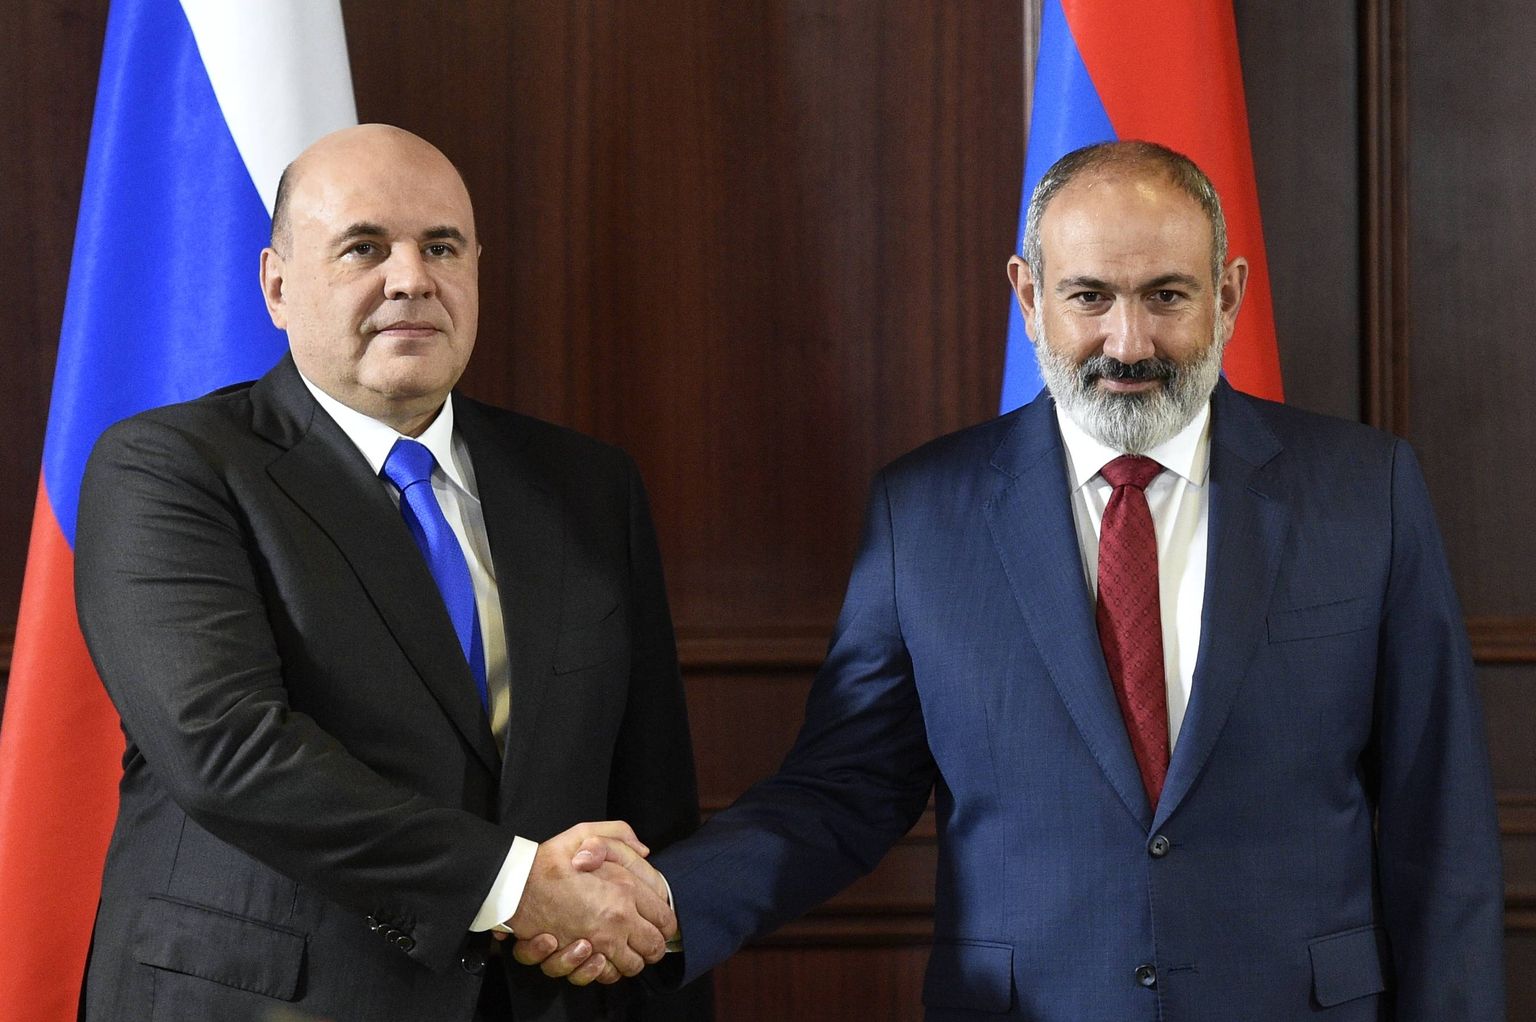 Vene peaminister Mihhail Mišustin (vasakul) ja Armeenia peaminister Nikol Pašinjan 24. augustil Euraasia valitsustevahelise nõukogu kohtumisel Armeenias.